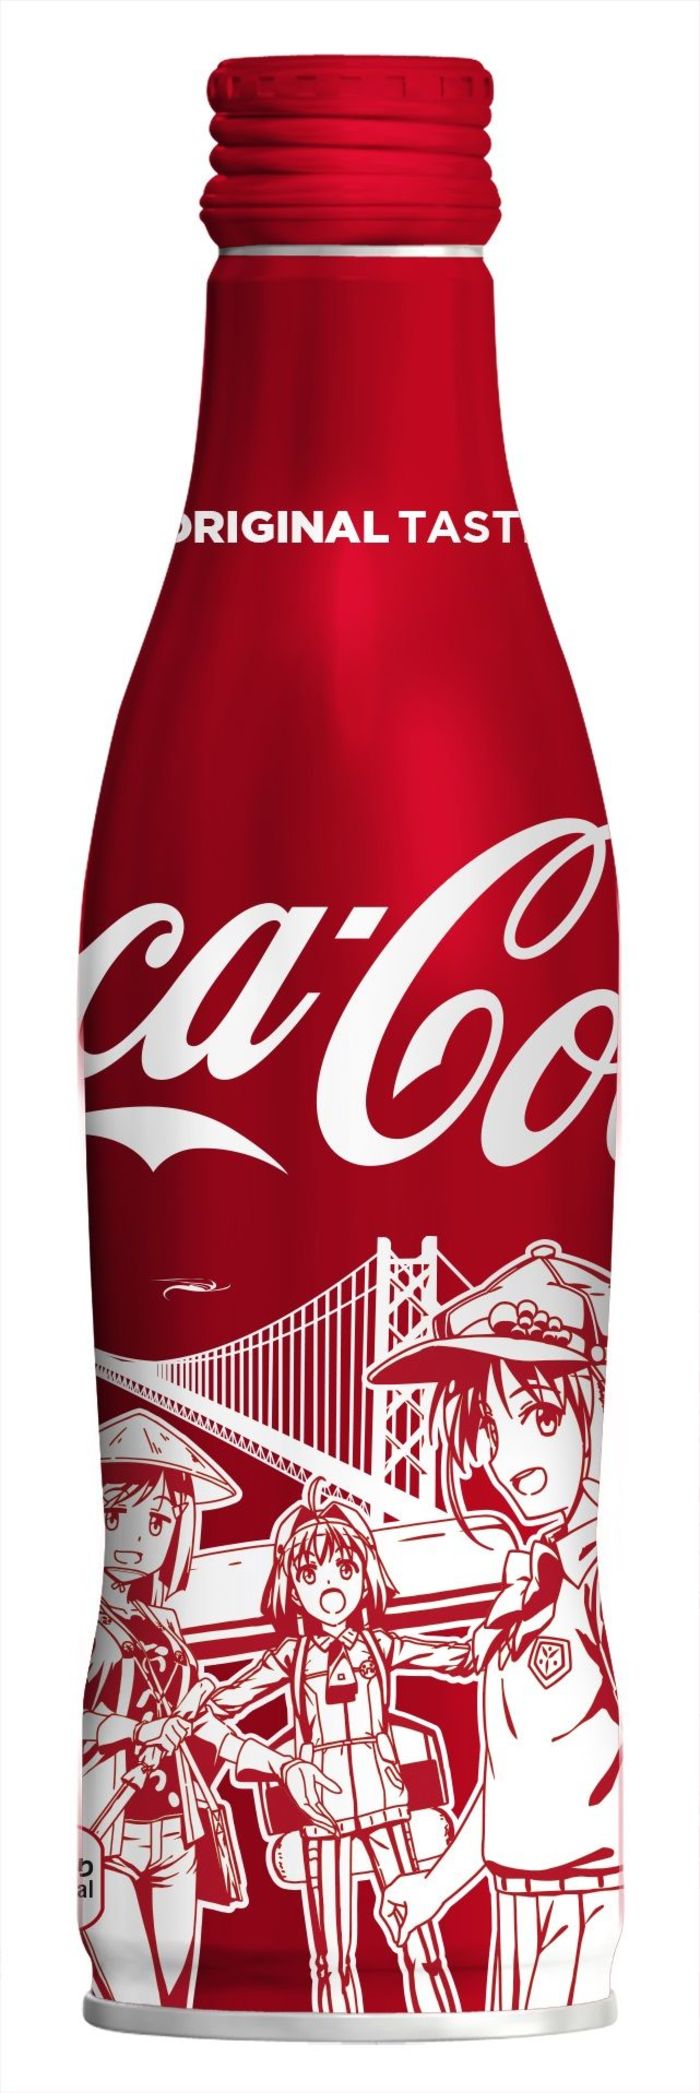 四国限定 おへんろ ボトルを発売 コカ コーラ 4日から 徳島ニュース 徳島新聞デジタル